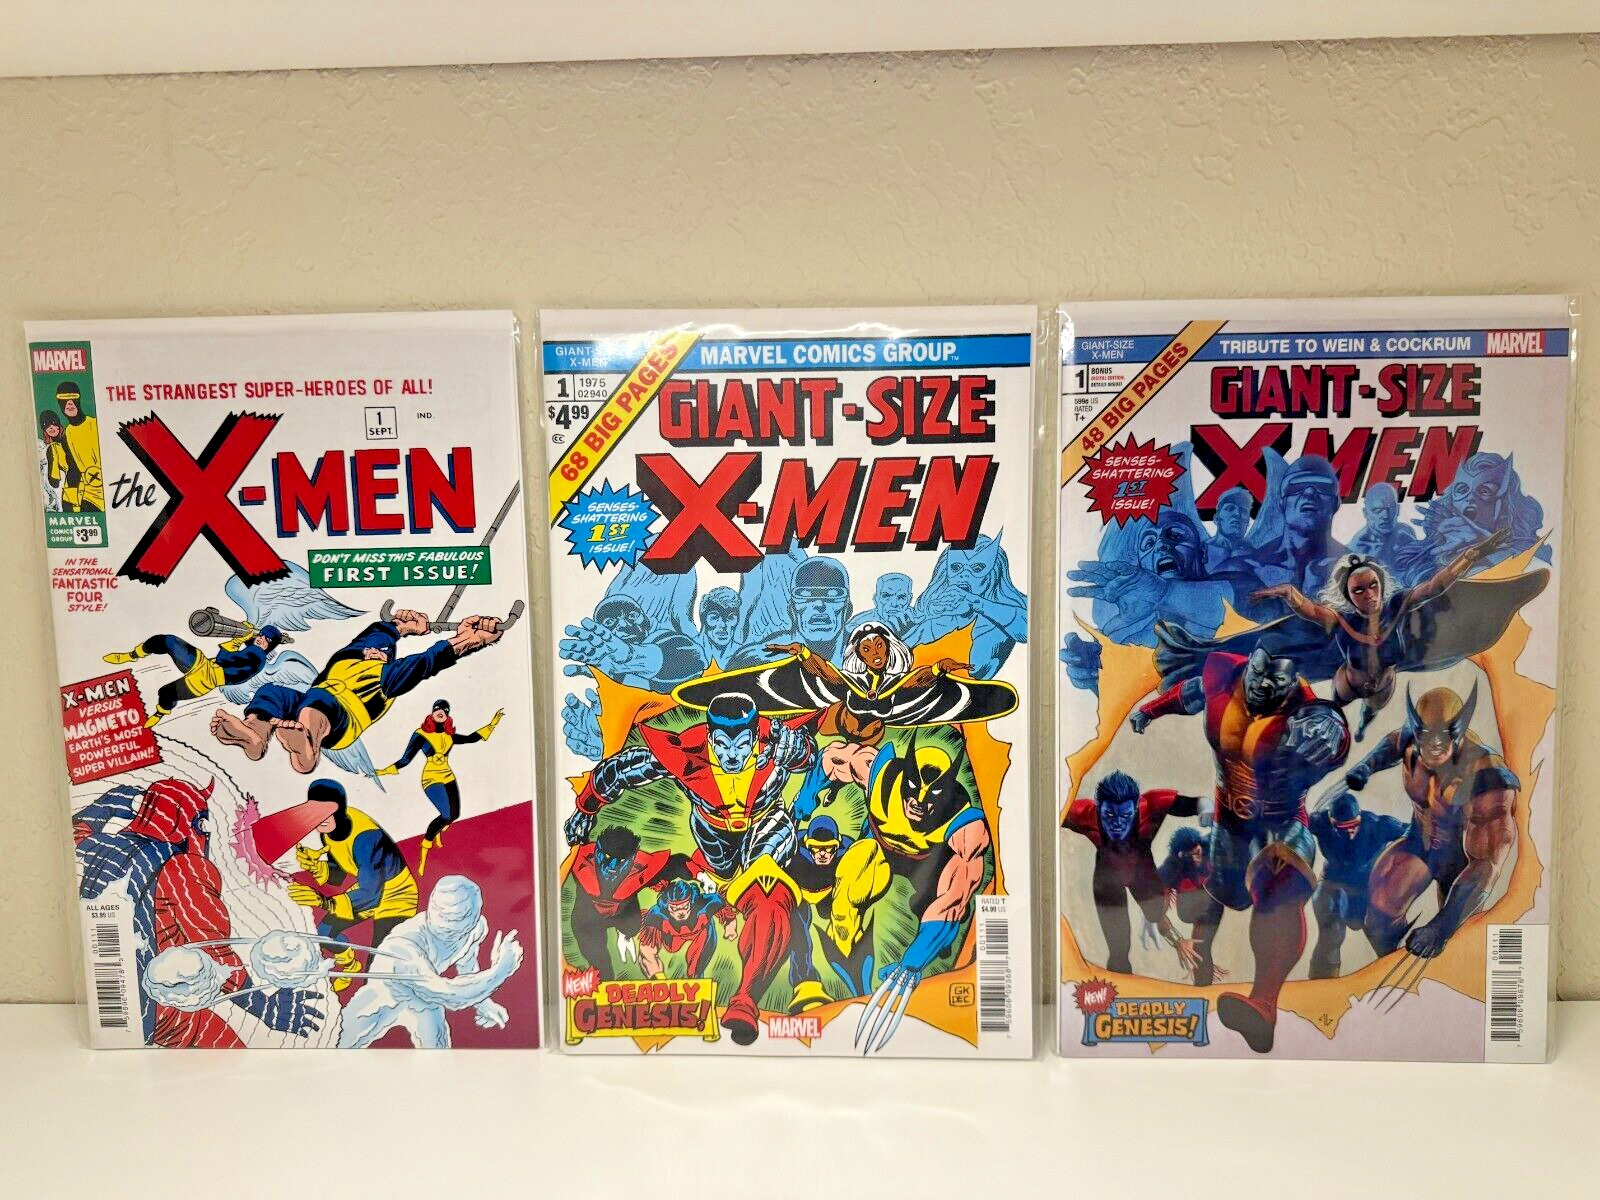 Uncanny X-Men #1 plus 2 Giant-Size X-Men #1 Facsimile Editions (lot of 3)